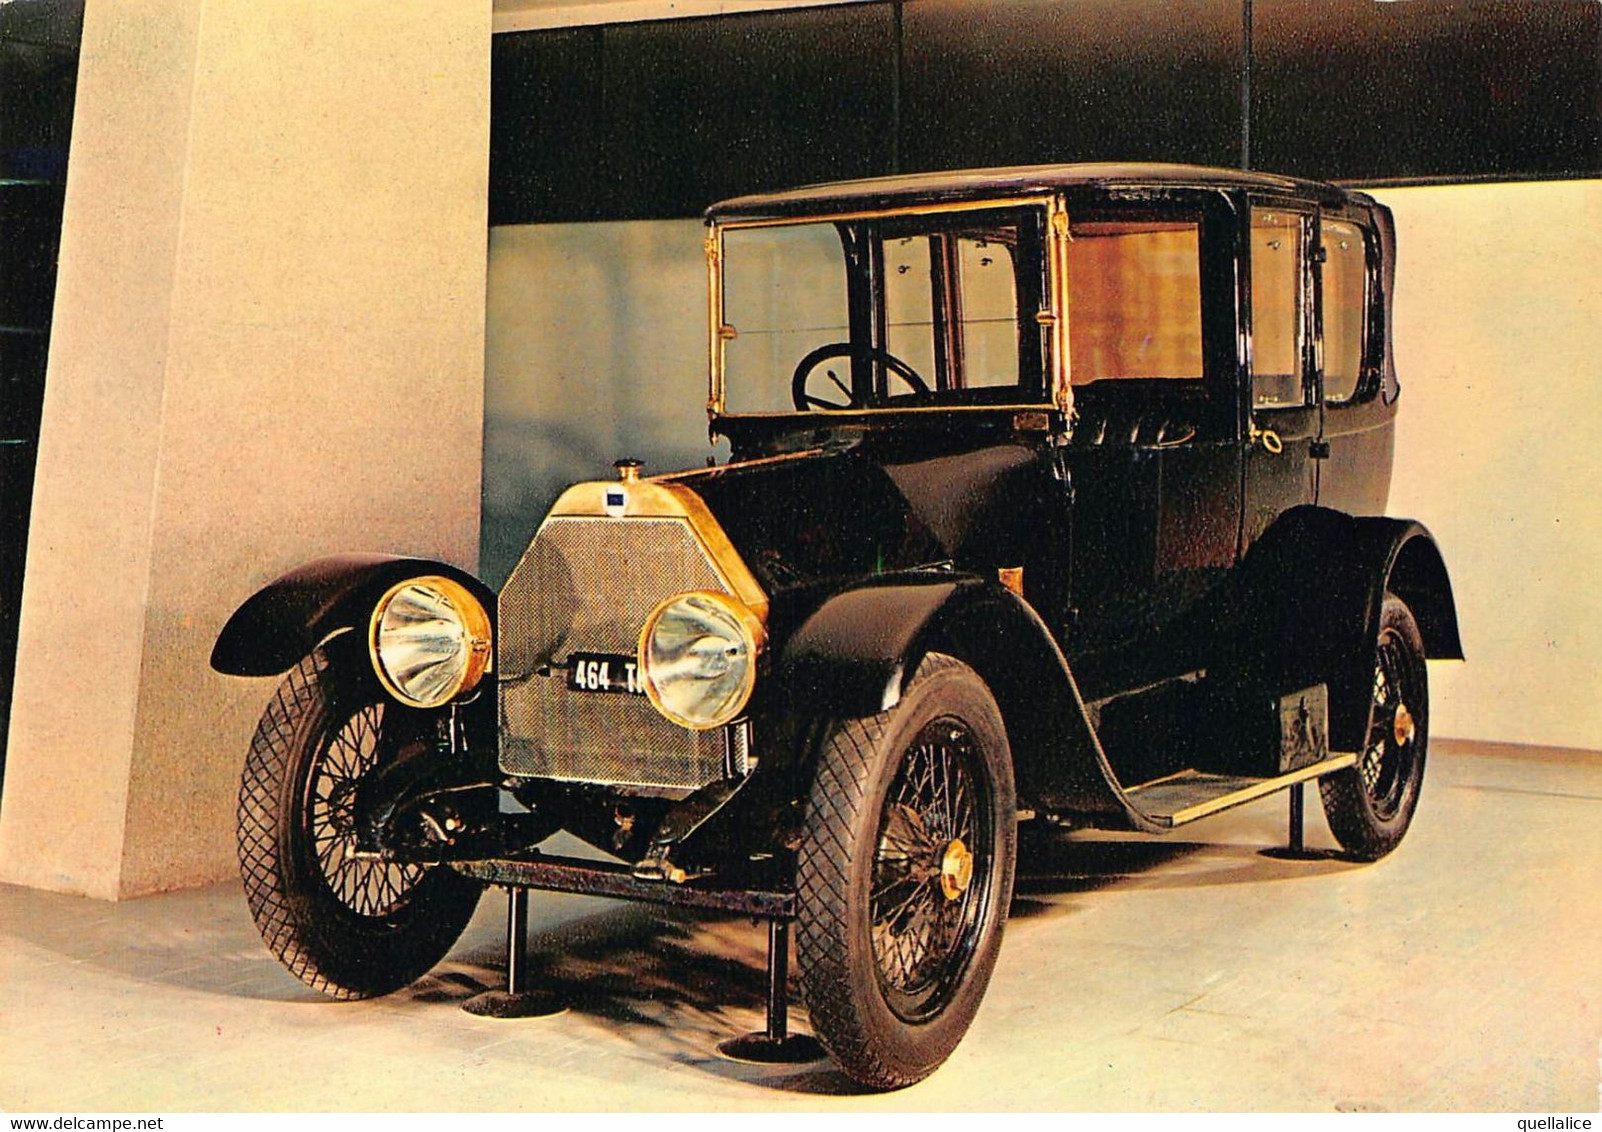 02427 "TORINO - MUSEO DELL'AUTOMOBILE - CARLO BISCARETTI DI RUFFIA - LANCIA THETA 1913" AUTO. CART NON SPED - Musées